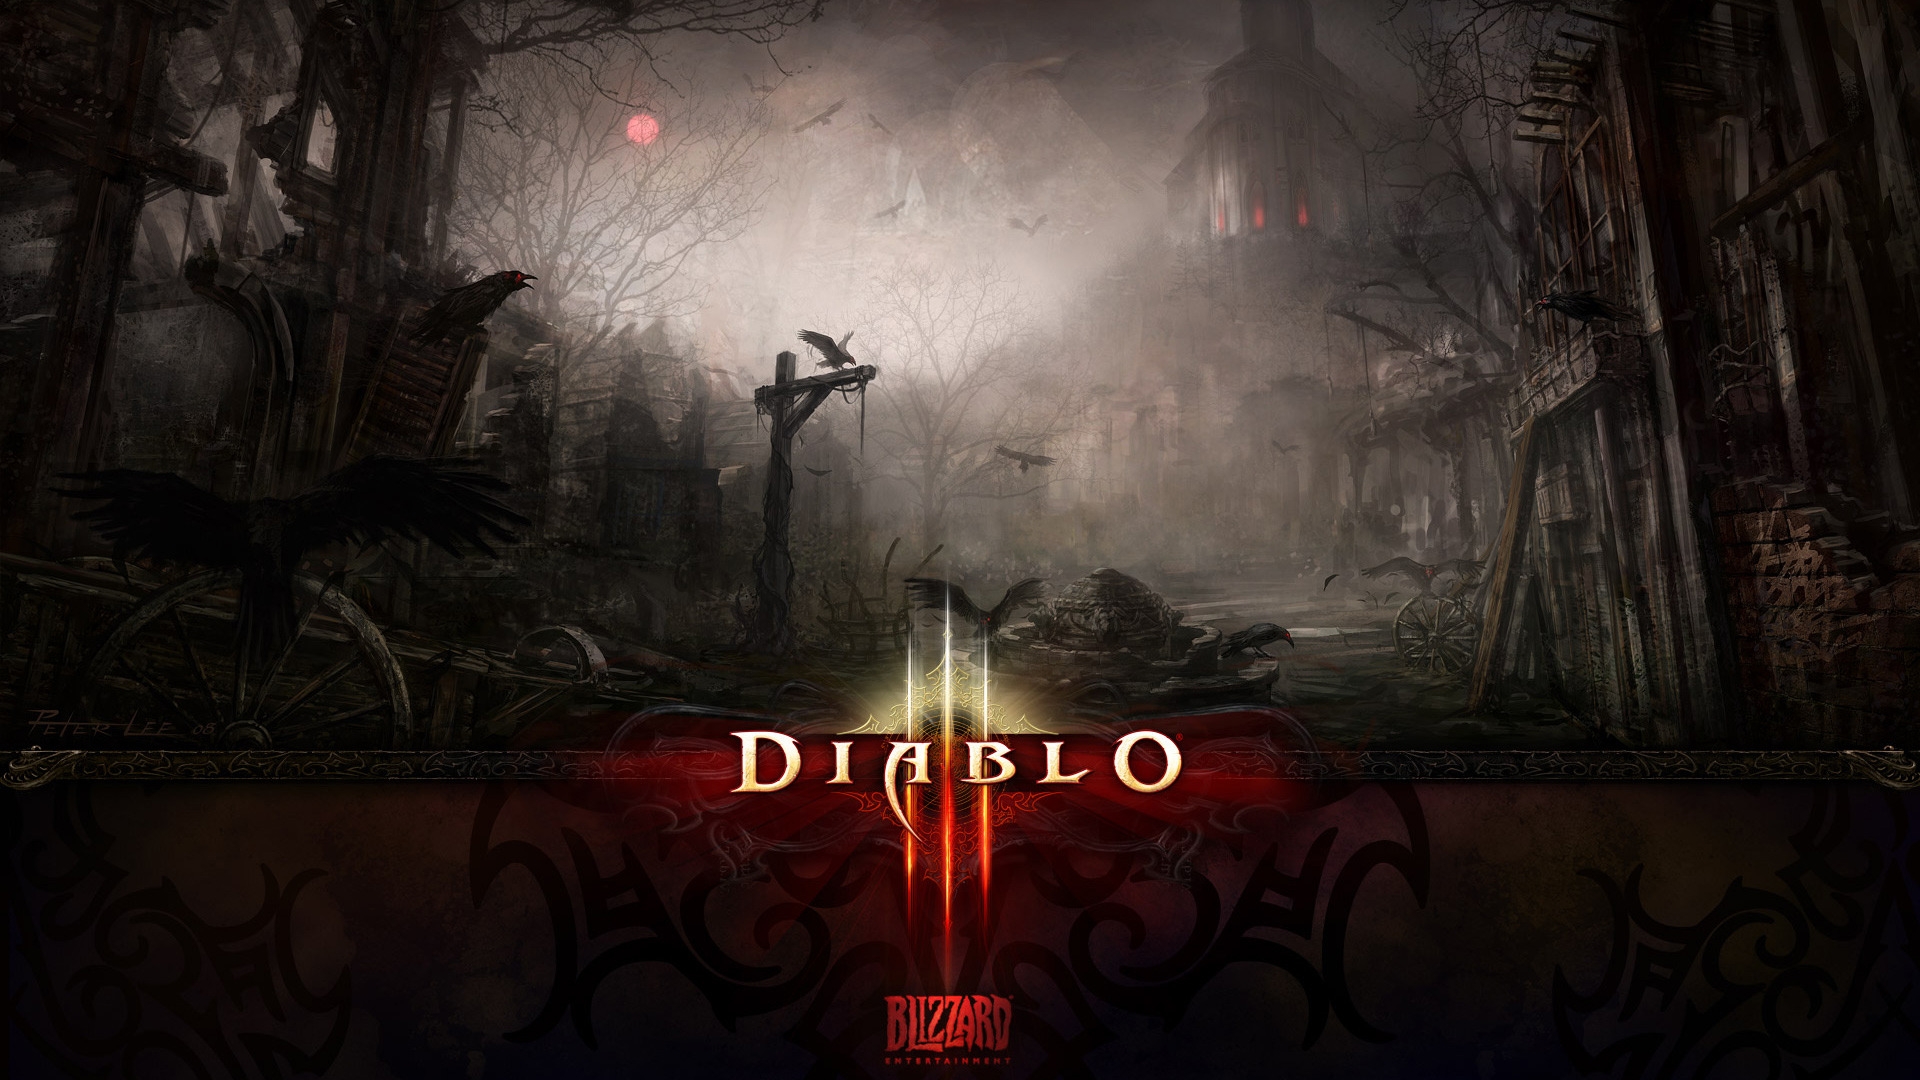 Dark Death Diablo 3 for 1920 x 1080 HDTV 1080p resolution